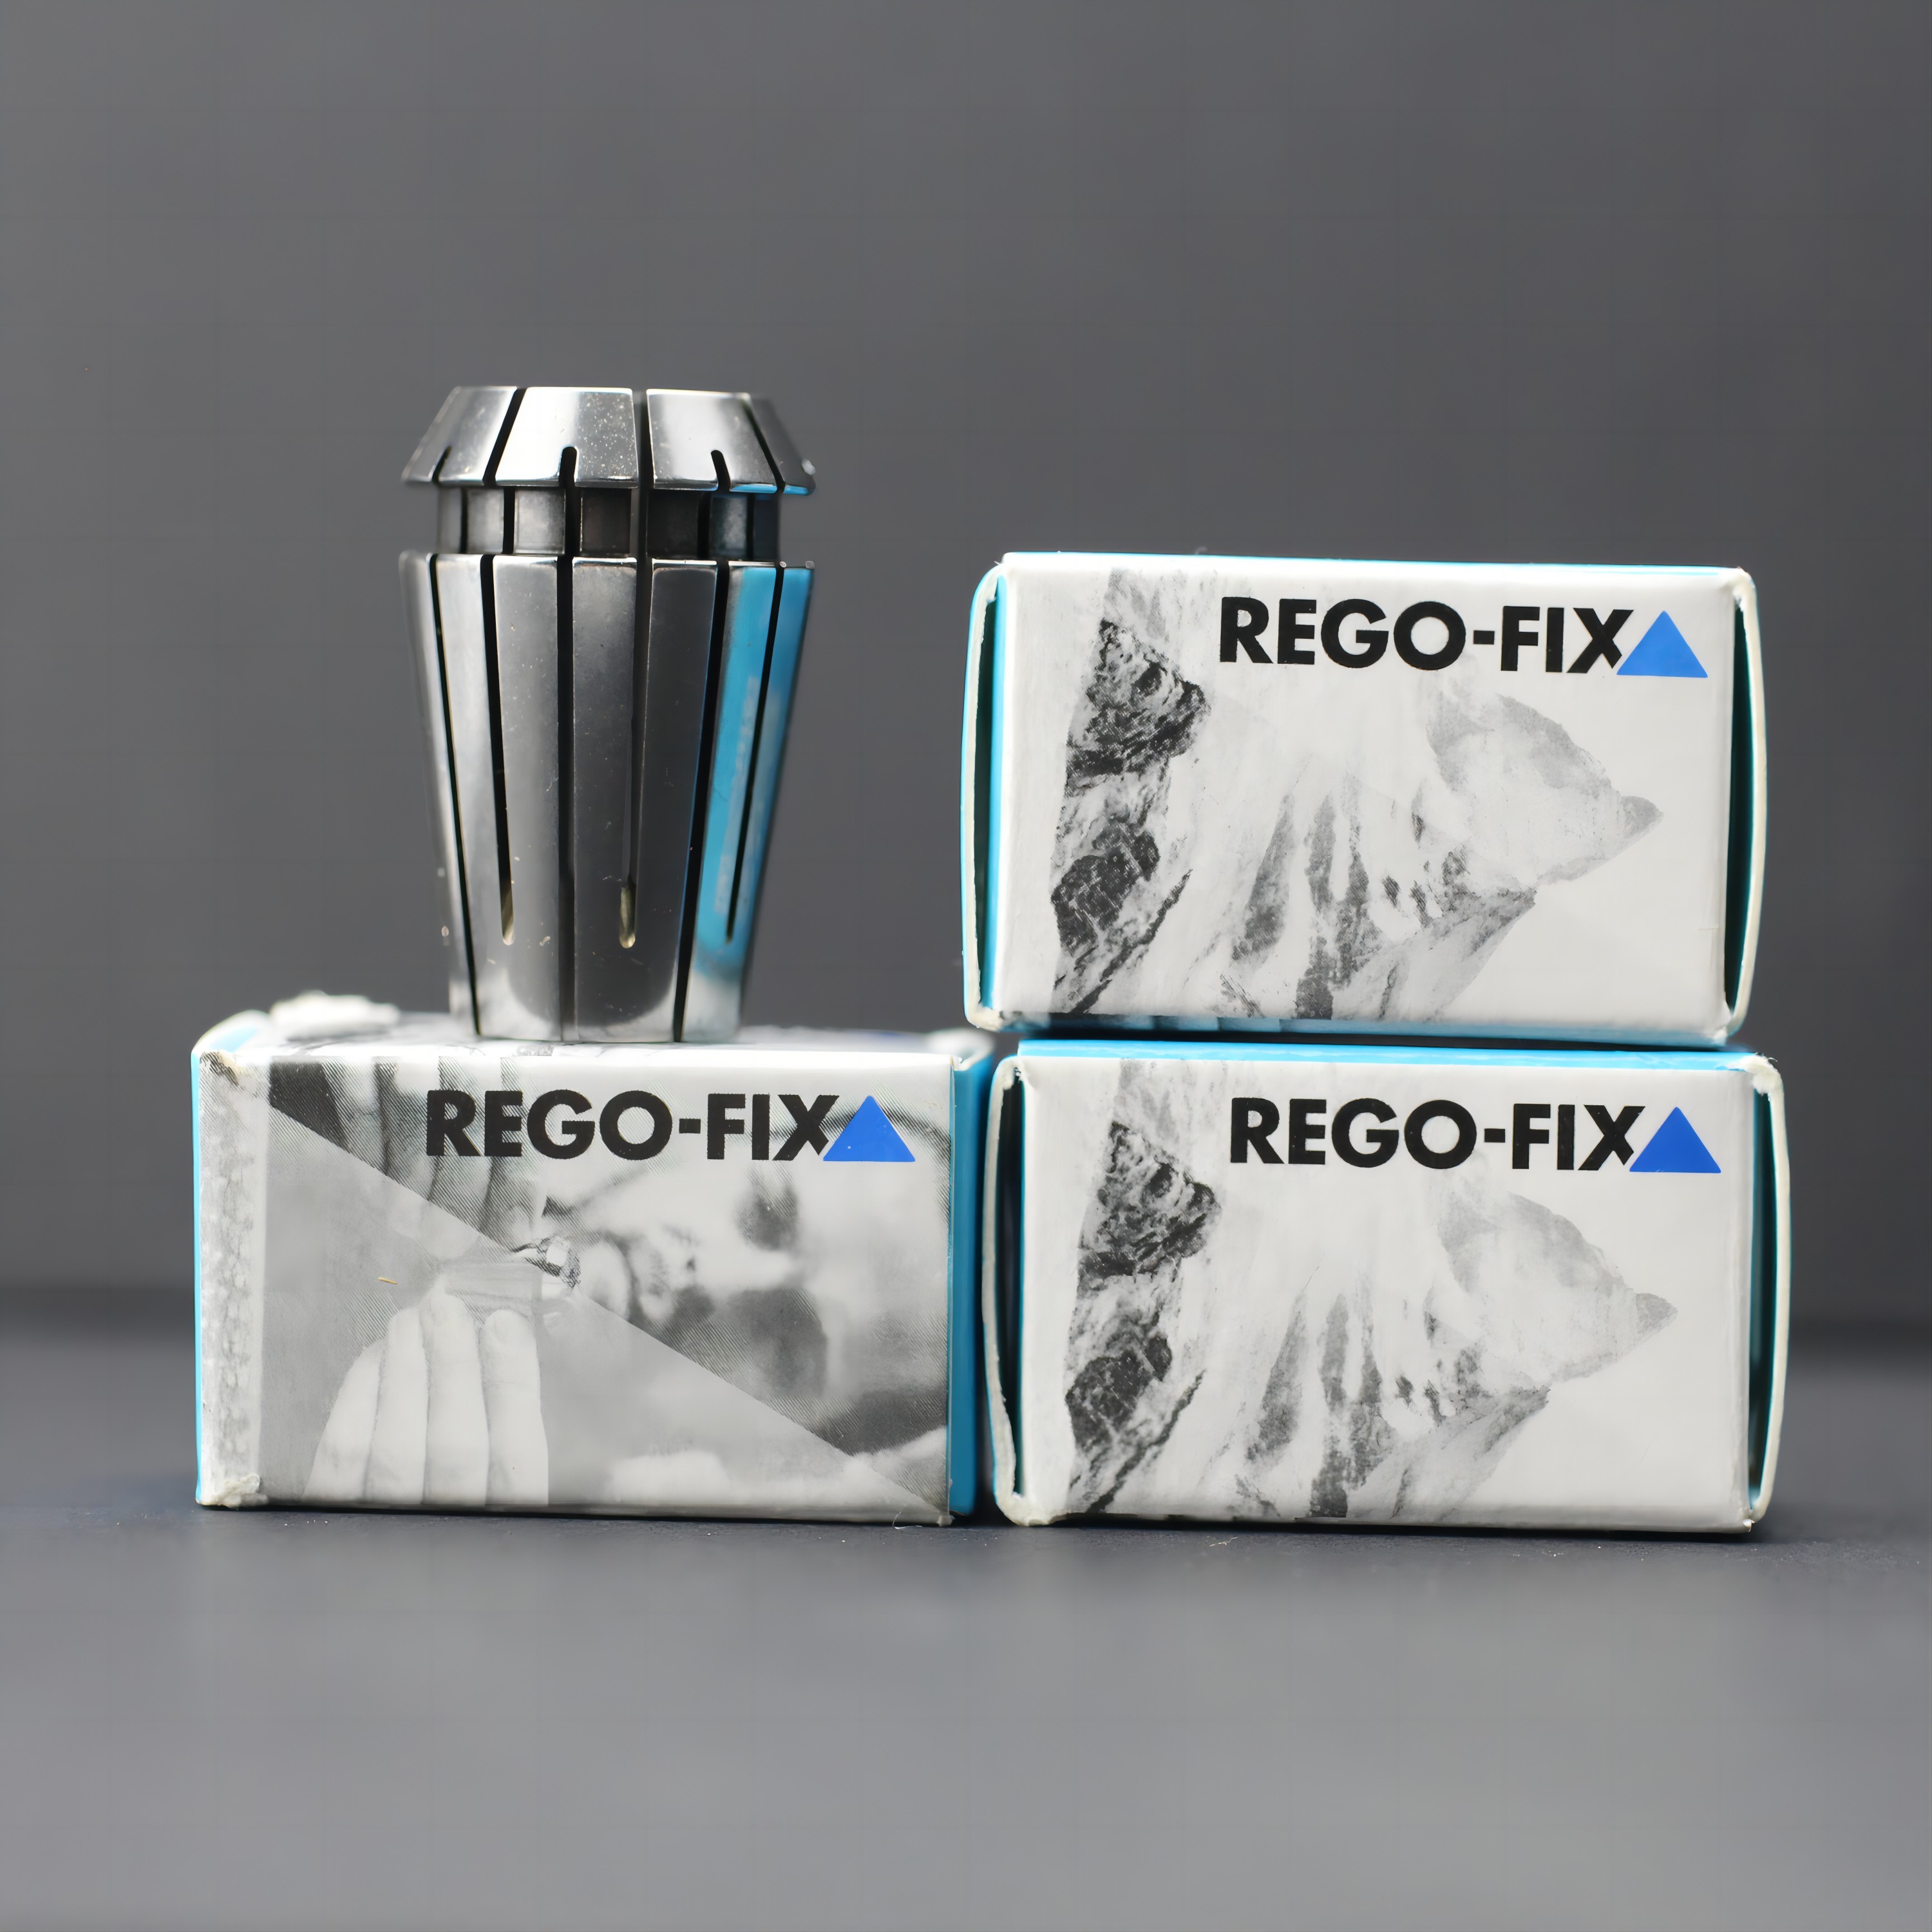 现货瑞士REGO-FIX三角牌ER高精密筒夹瑞格费克斯ER筒夹进口ER筒夹